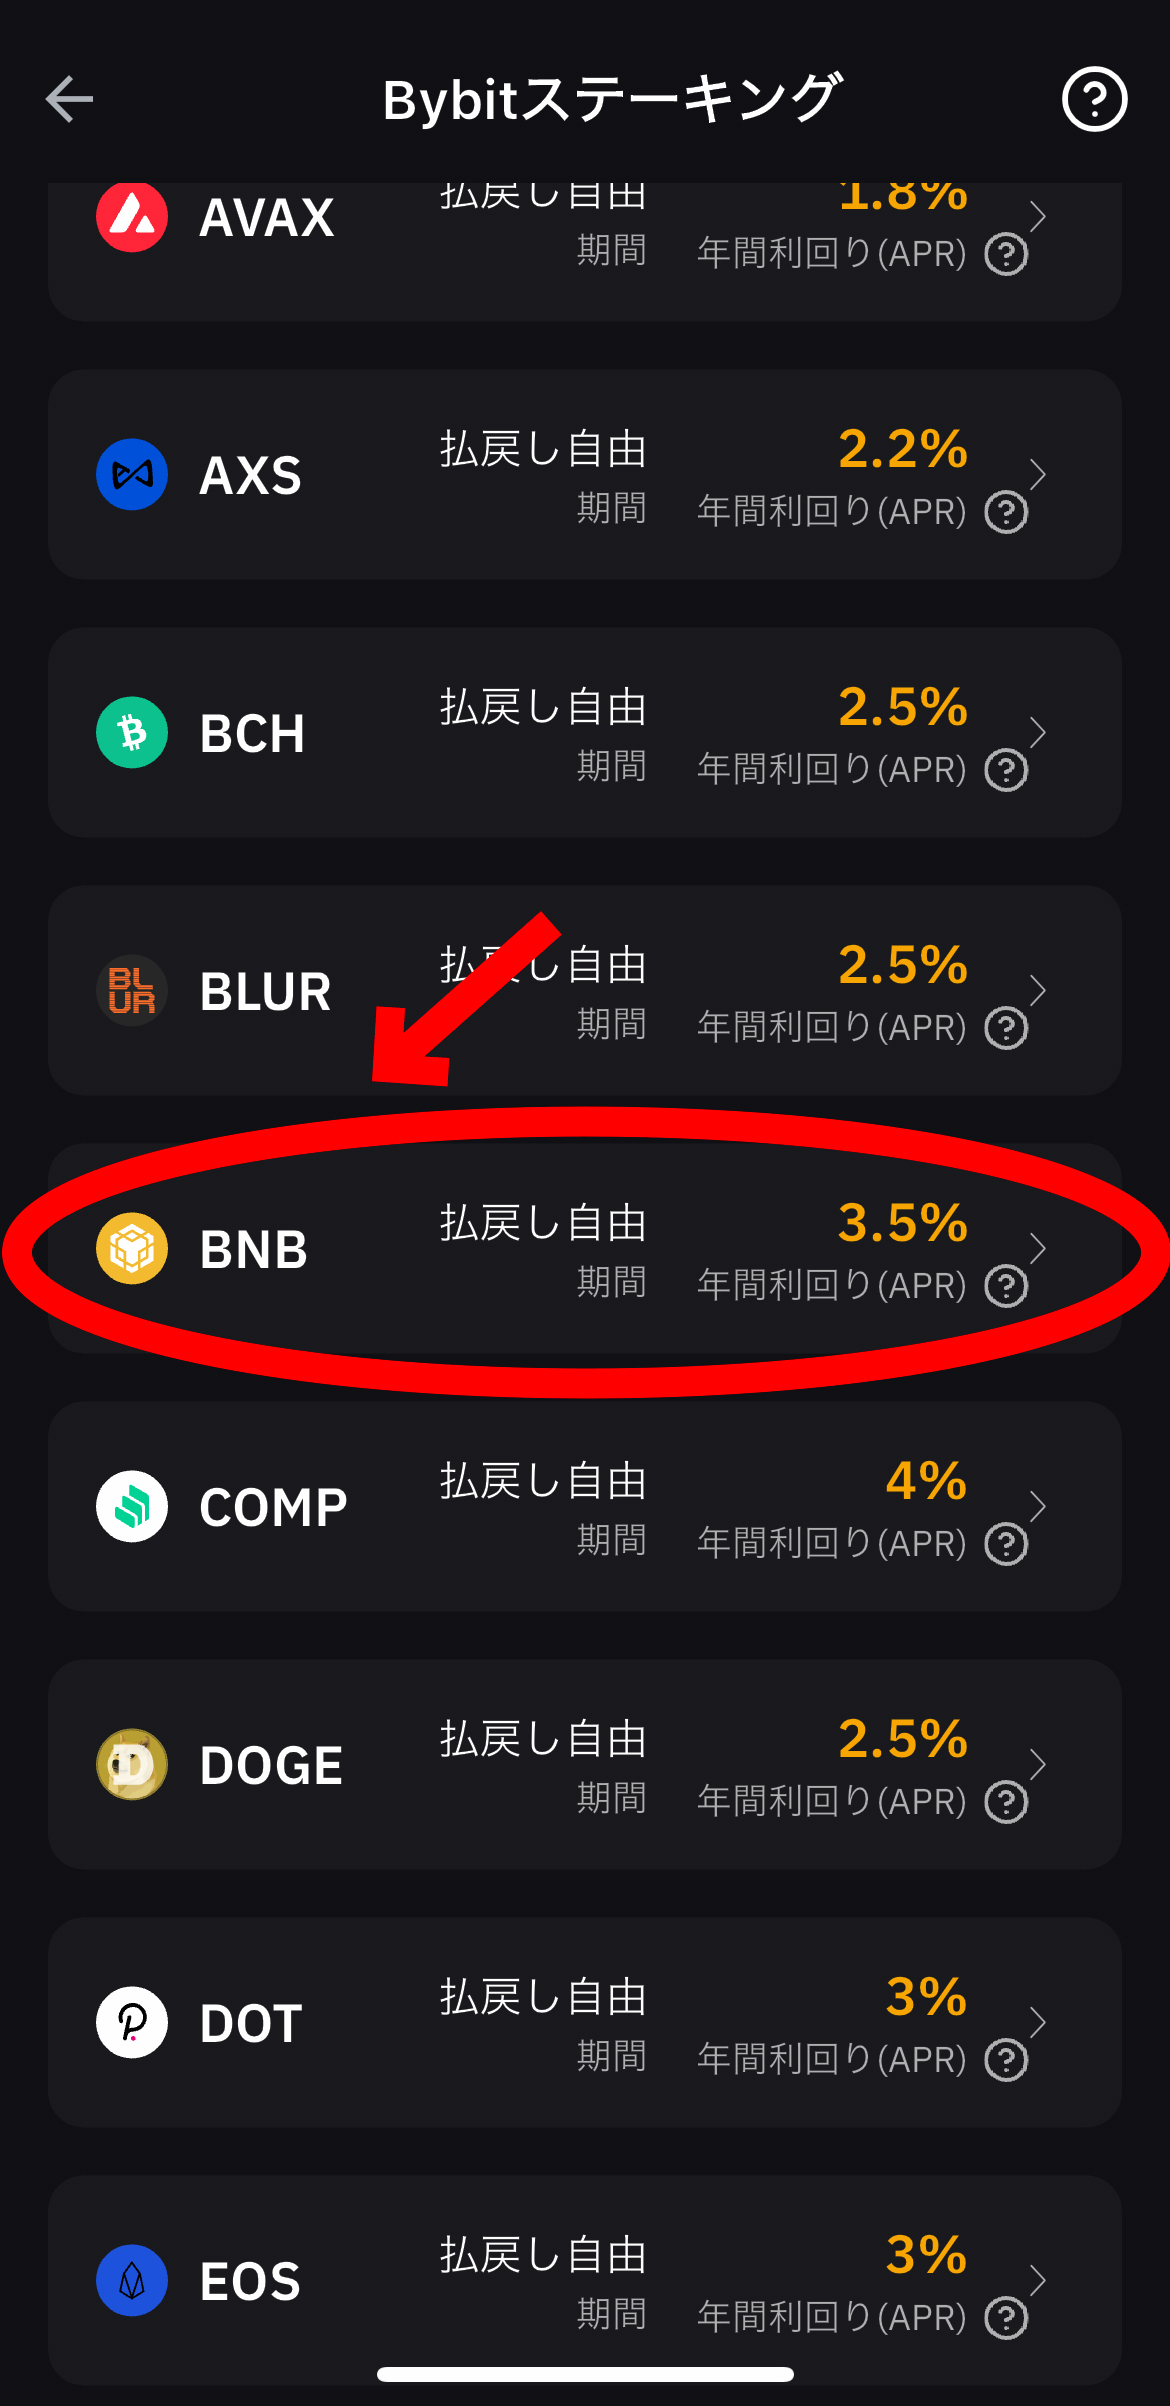 仮想通貨 バイナンスコイン（BNB）の買い方、ステーキング方法【Bybit】【バイビット】BNBを選択します